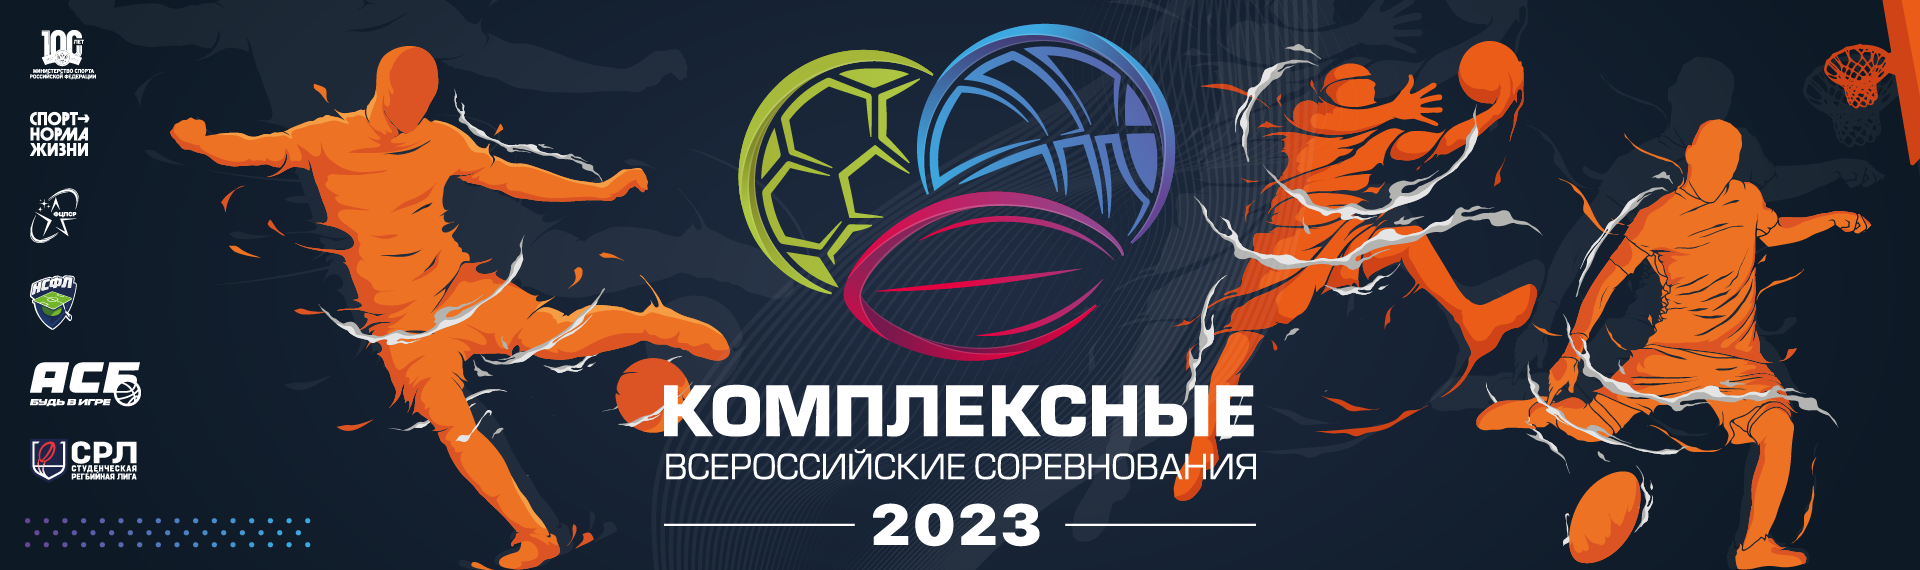 Комплексные всероссийские соревнования (футбол, баскетбол 3х3, регби-7) – 2023 год